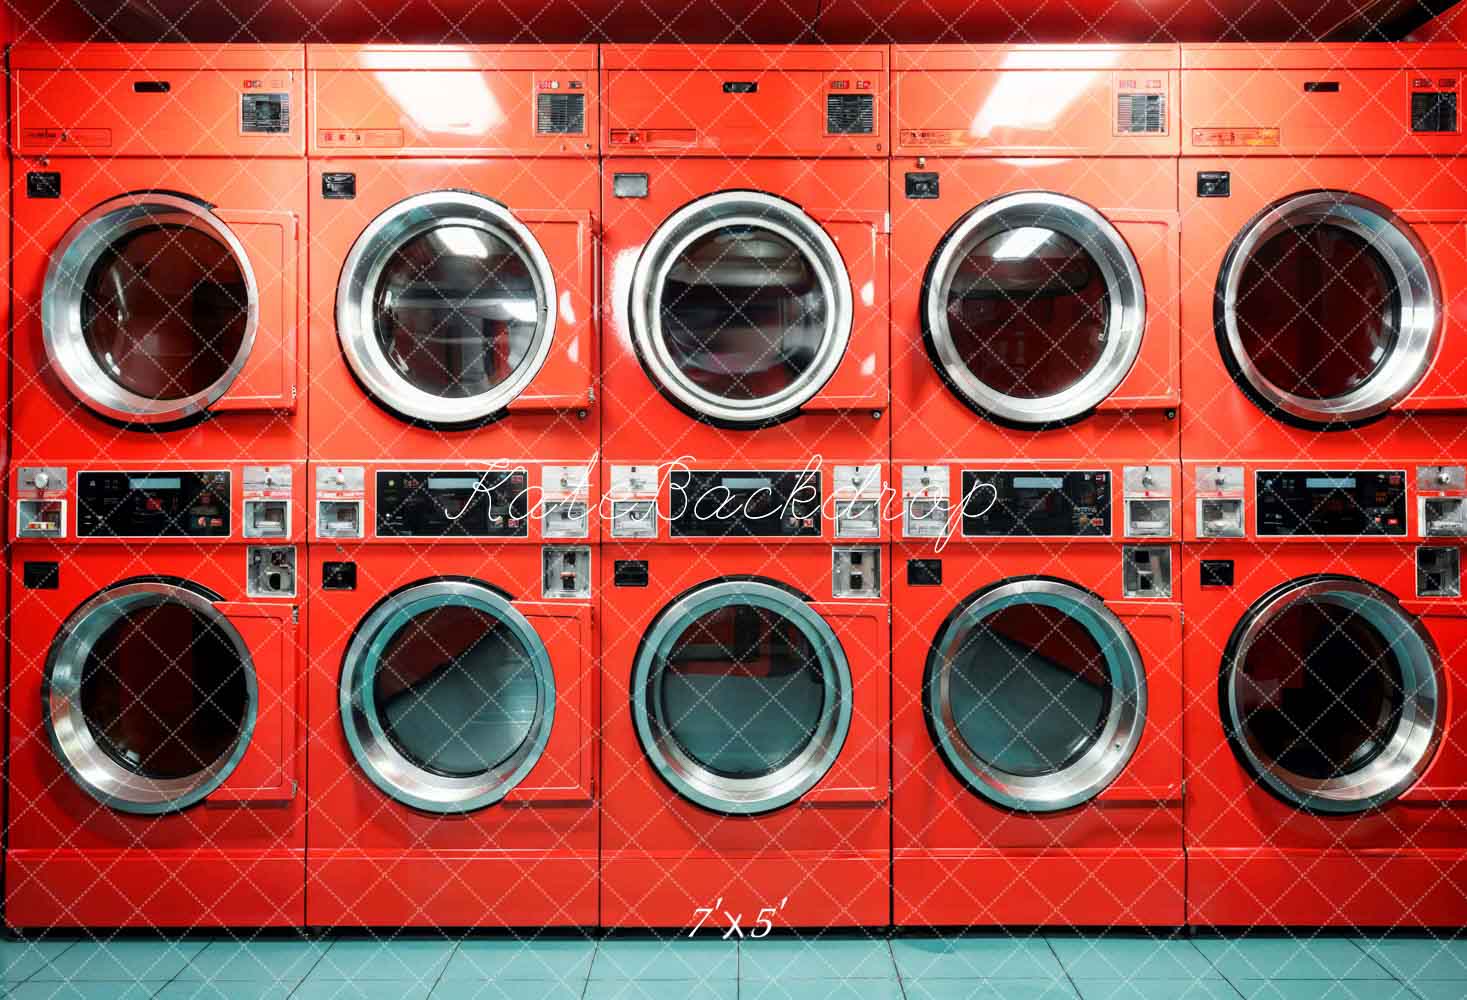 Kate Jour de lessive Rouge Salle de Machine à laver Toile de fond conçue par Emetselch